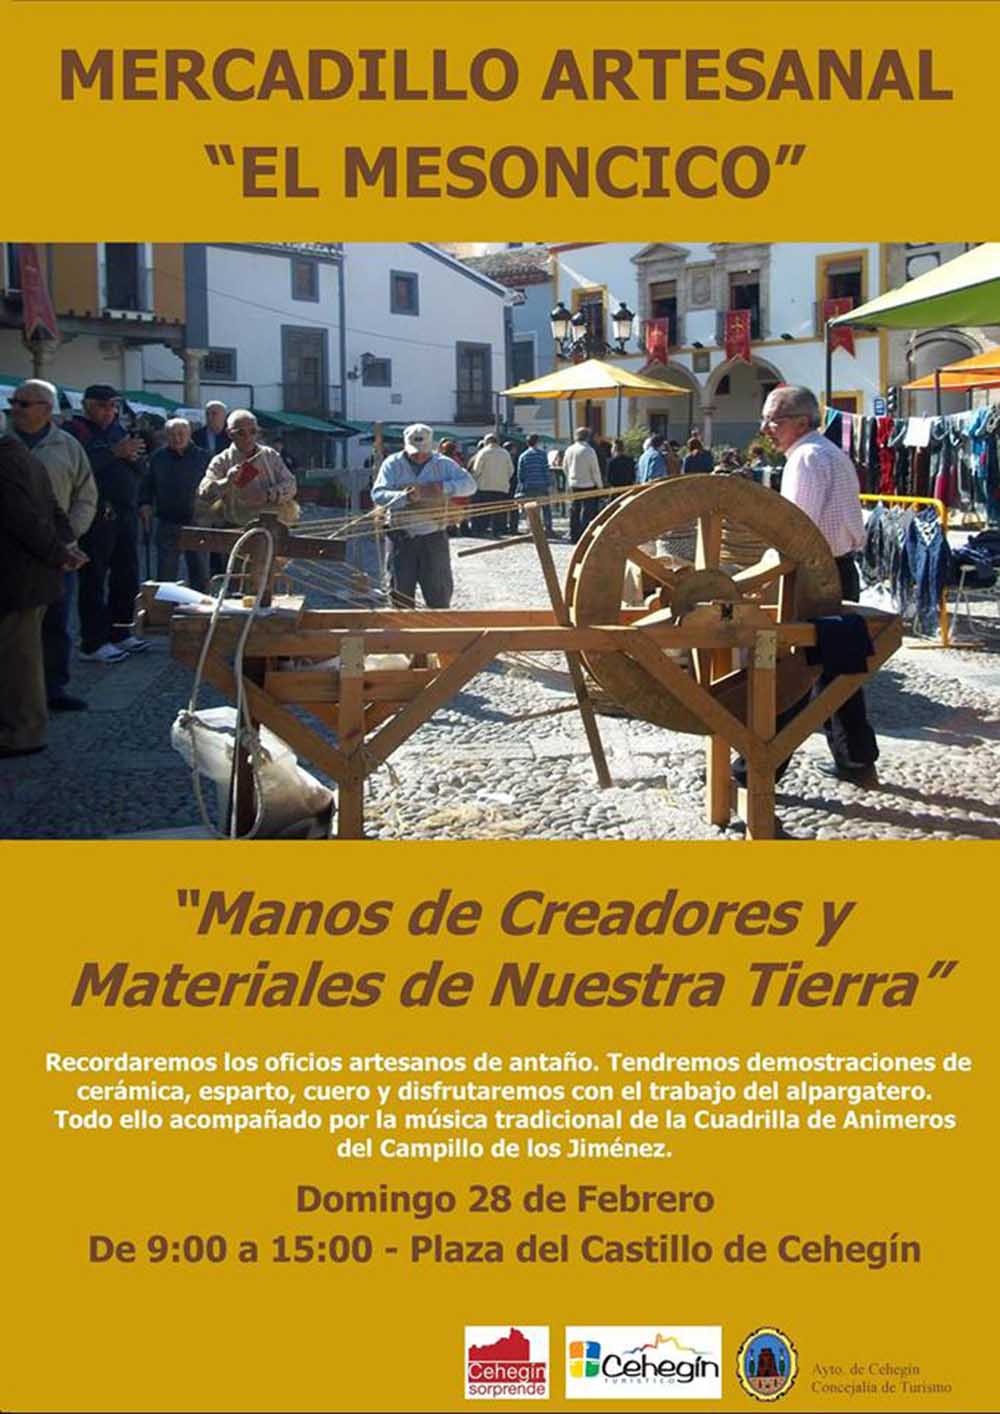 ‘El Mesoncico’ regresa este domingo a Cehegín con una edición dedicada a los oficios artesanos